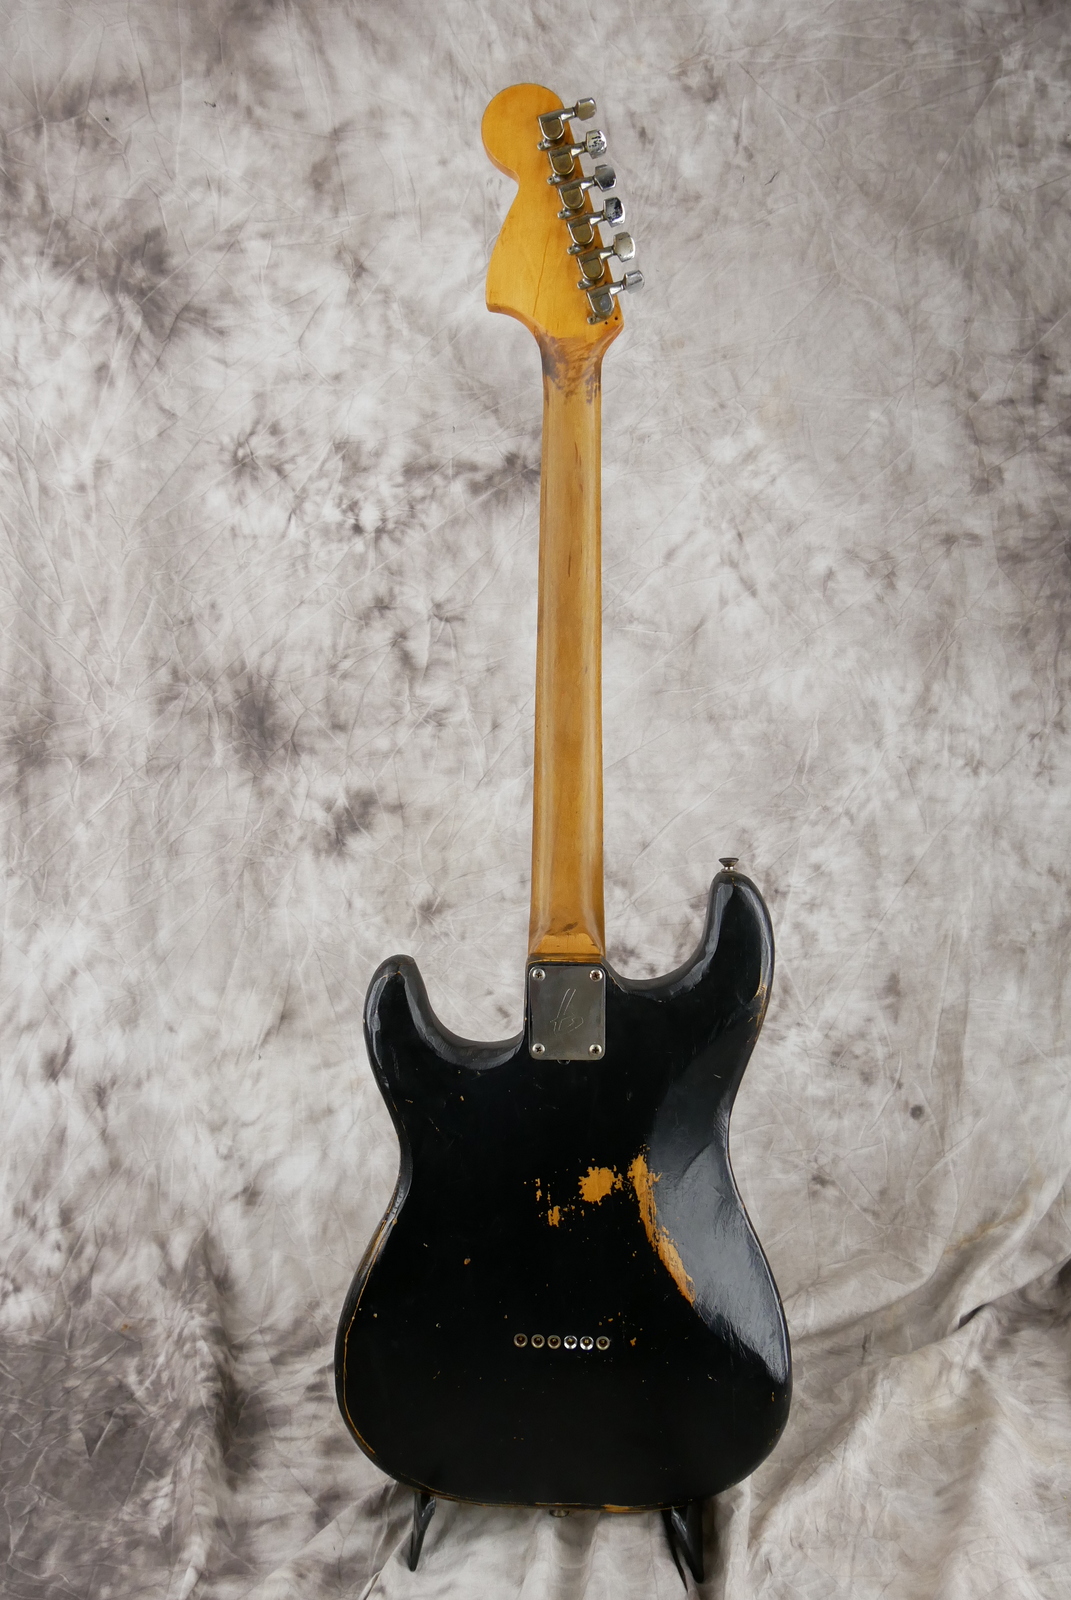 img/vintage/5388/Fender_Stratocaster_one_humbucker_tinkered_black_1971_73-002.JPG